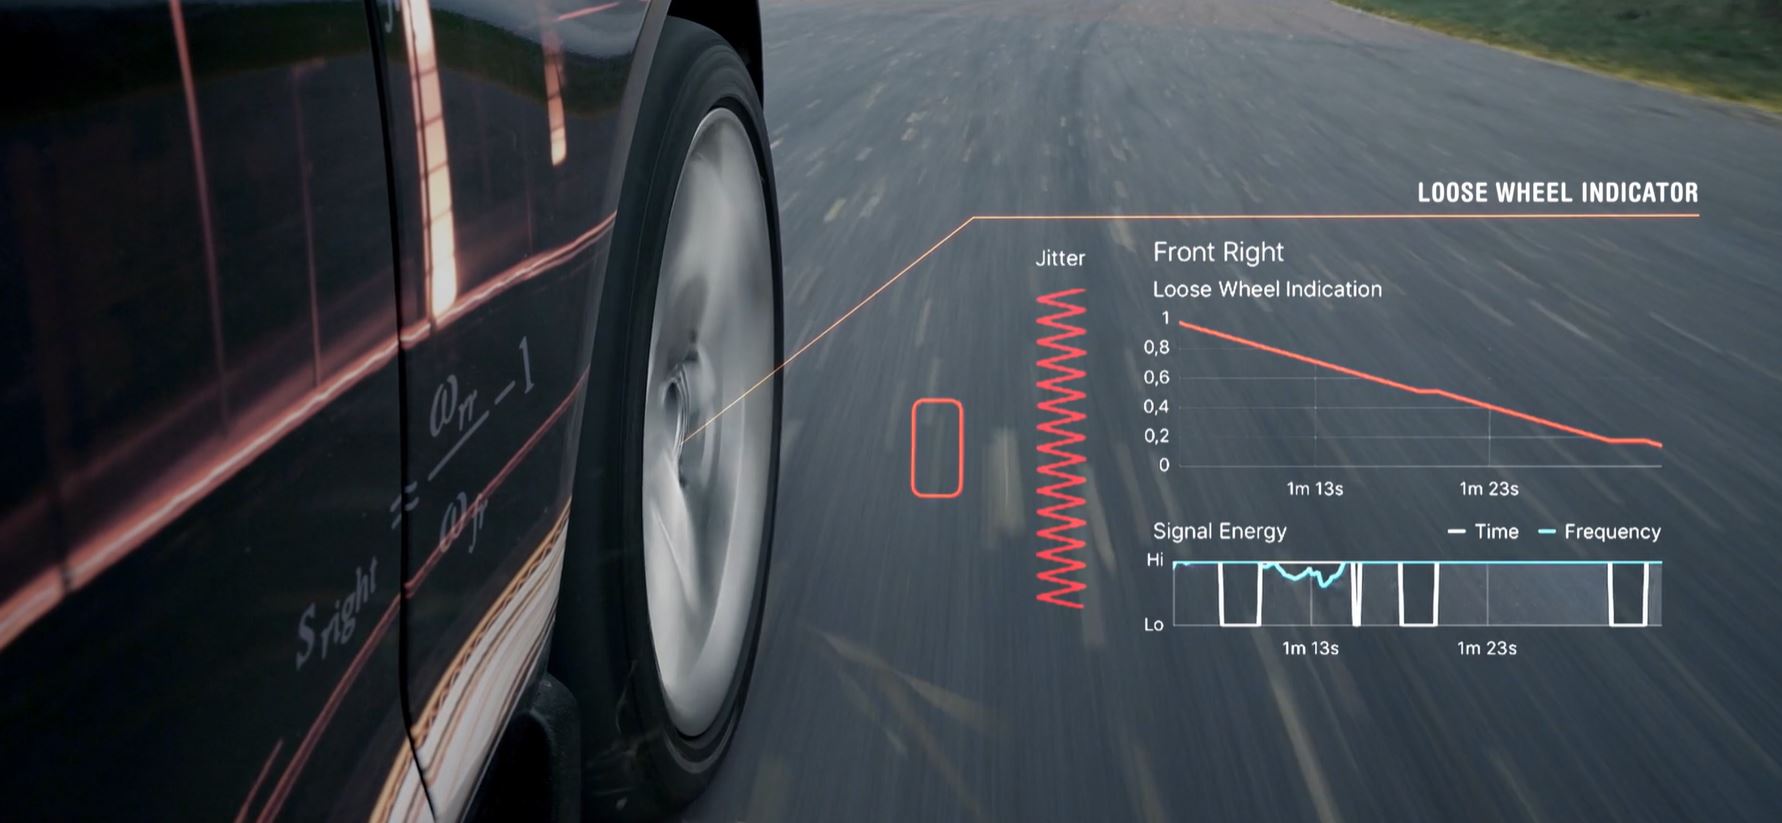 自動車の脱輪の予兆をとらえる車載ソフトウェアLoose Wheel Indicator （LWI）、累計車載台数１万台を突破しクルマをより高度なセイフティーレベルへのサブ画像2_右前輪のホイールナットが緩んでいることを、特有の振動成分から検出している